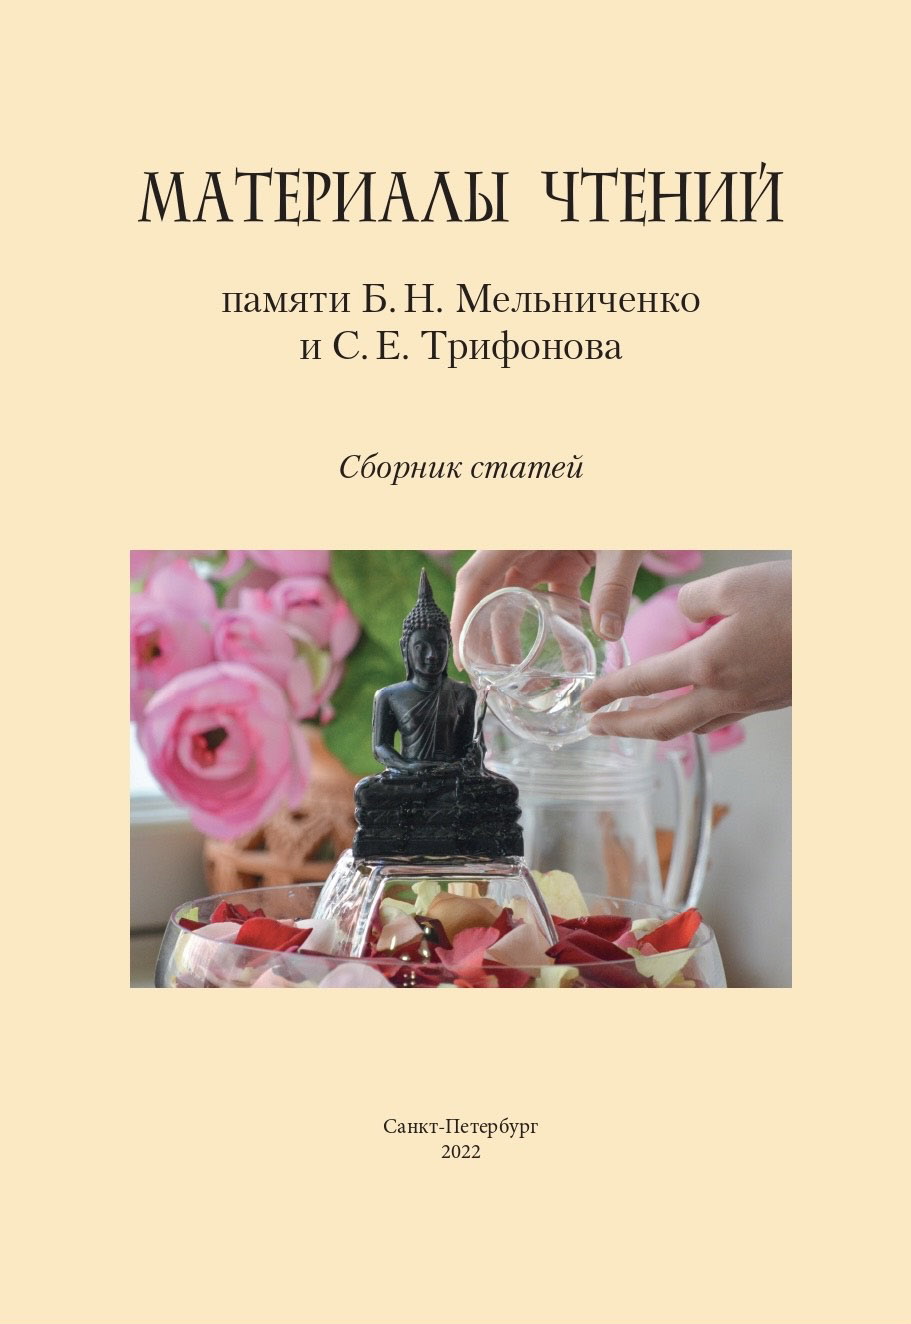 Cover of Чтения памяти Б. Н. Мельниченко и С. Е. Трифонова 2022